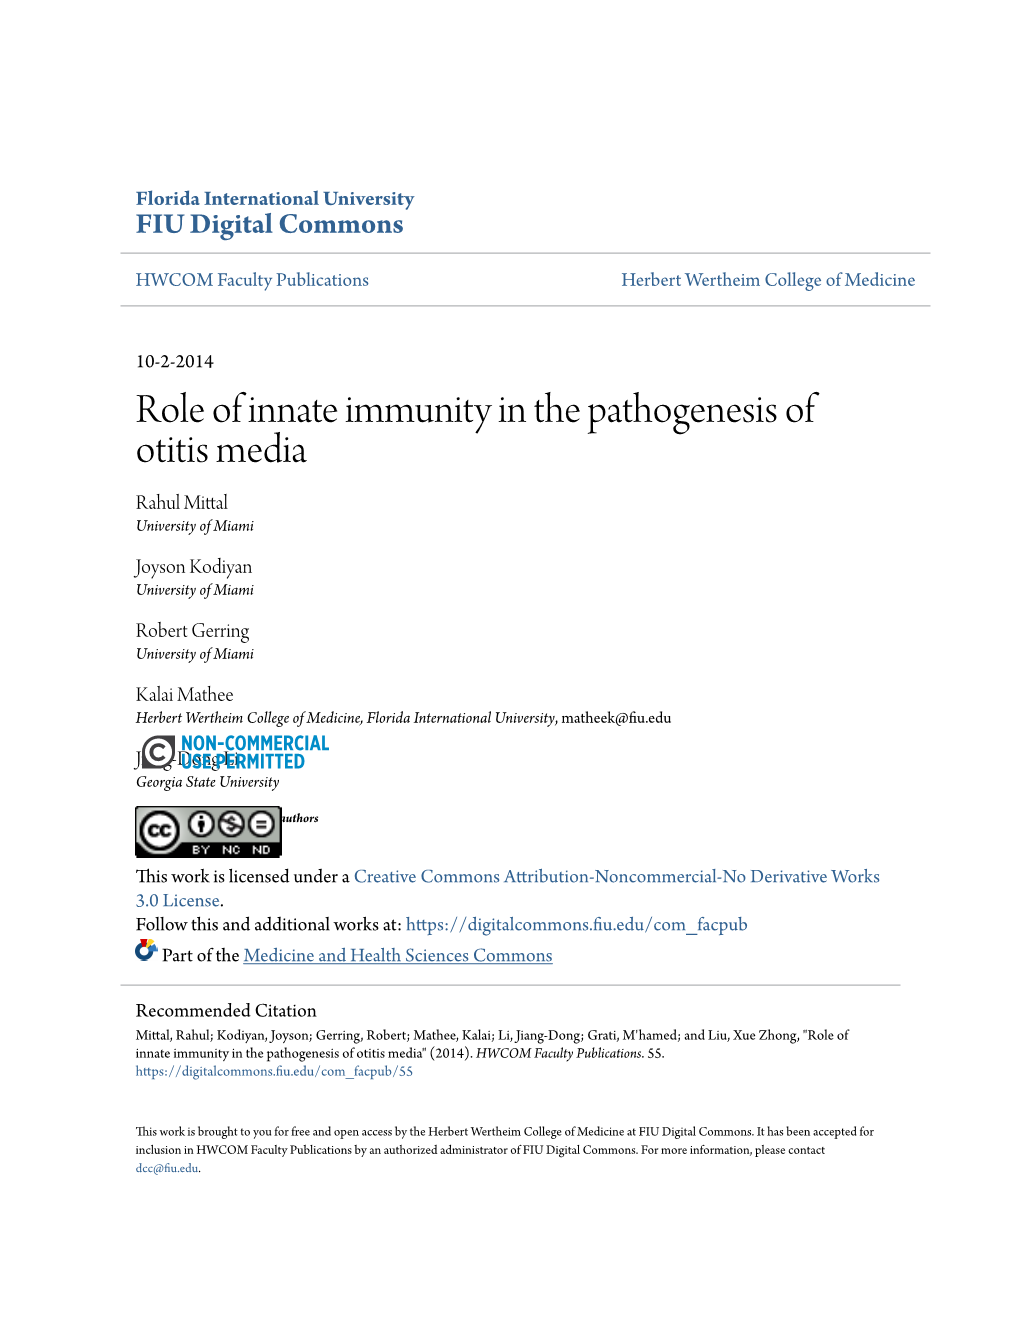 Role of Innate Immunity in the Pathogenesis of Otitis Media Rahul Mittal University of Miami